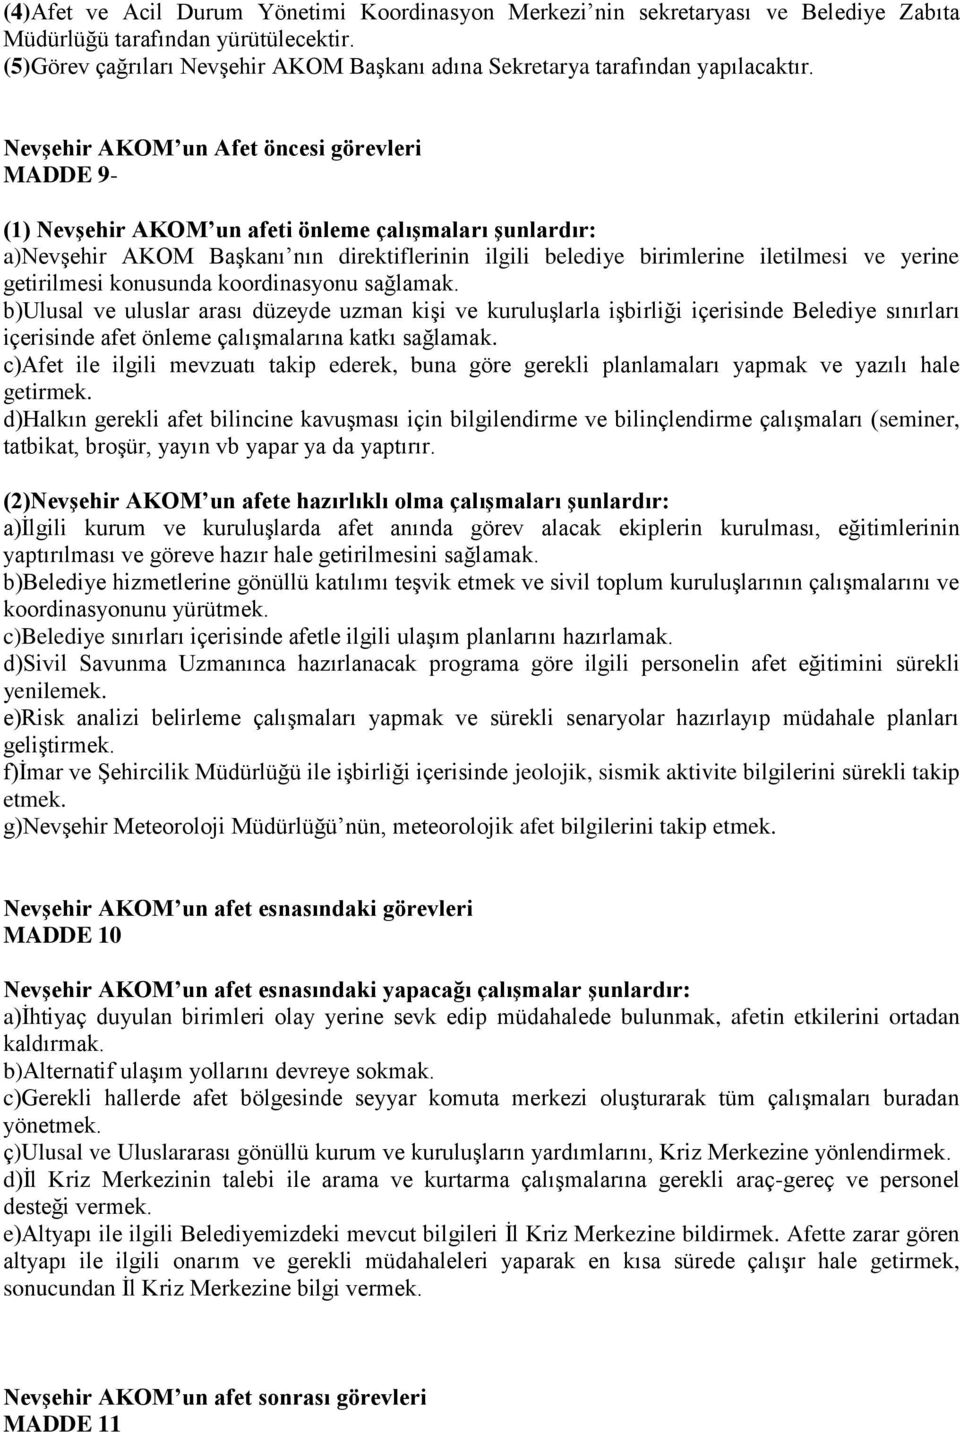 Nevşehir AKOM un Afet öncesi görevleri MADDE 9- (1) Nevşehir AKOM un afeti önleme çalışmaları şunlardır: a)nevşehir AKOM Başkanı nın direktiflerinin ilgili belediye birimlerine iletilmesi ve yerine